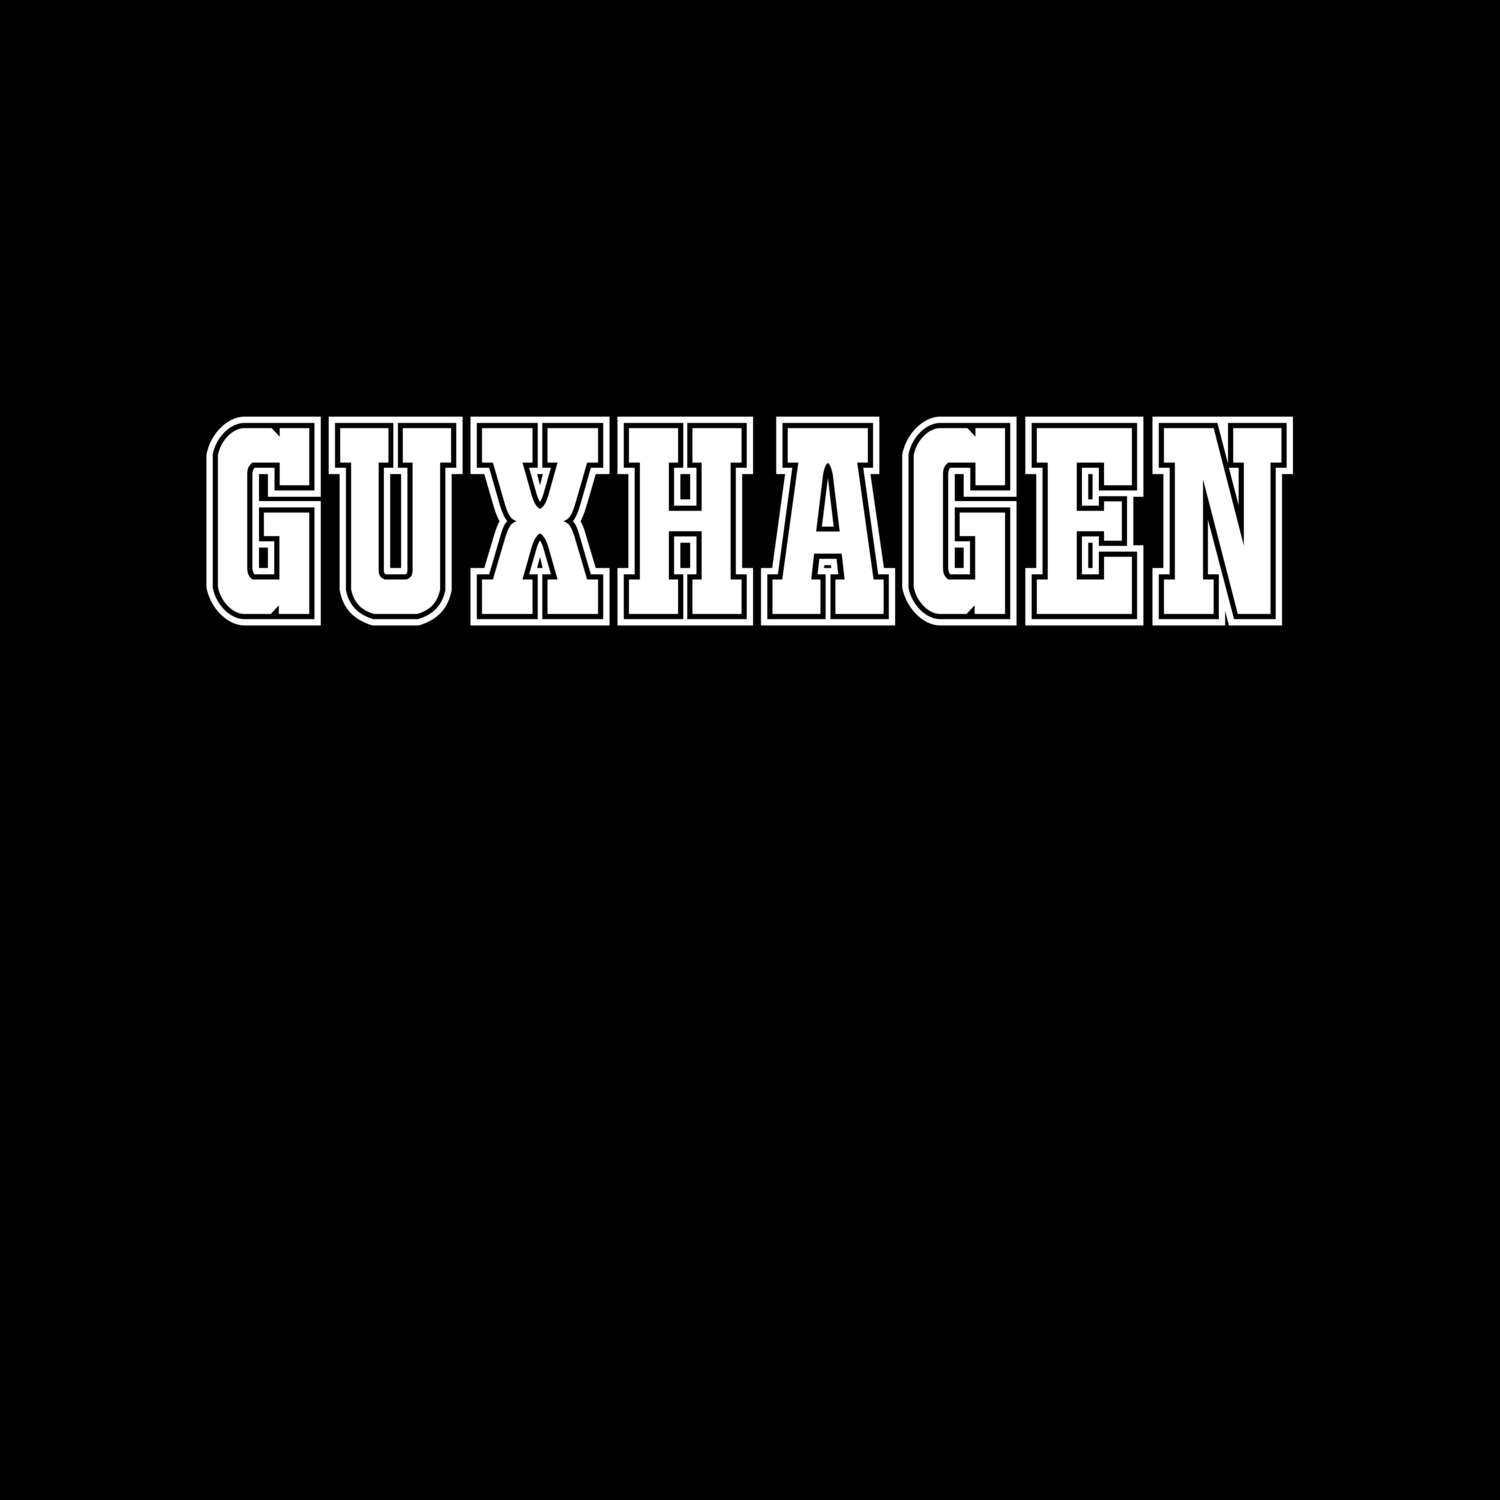 Guxhagen T-Shirt »Classic«